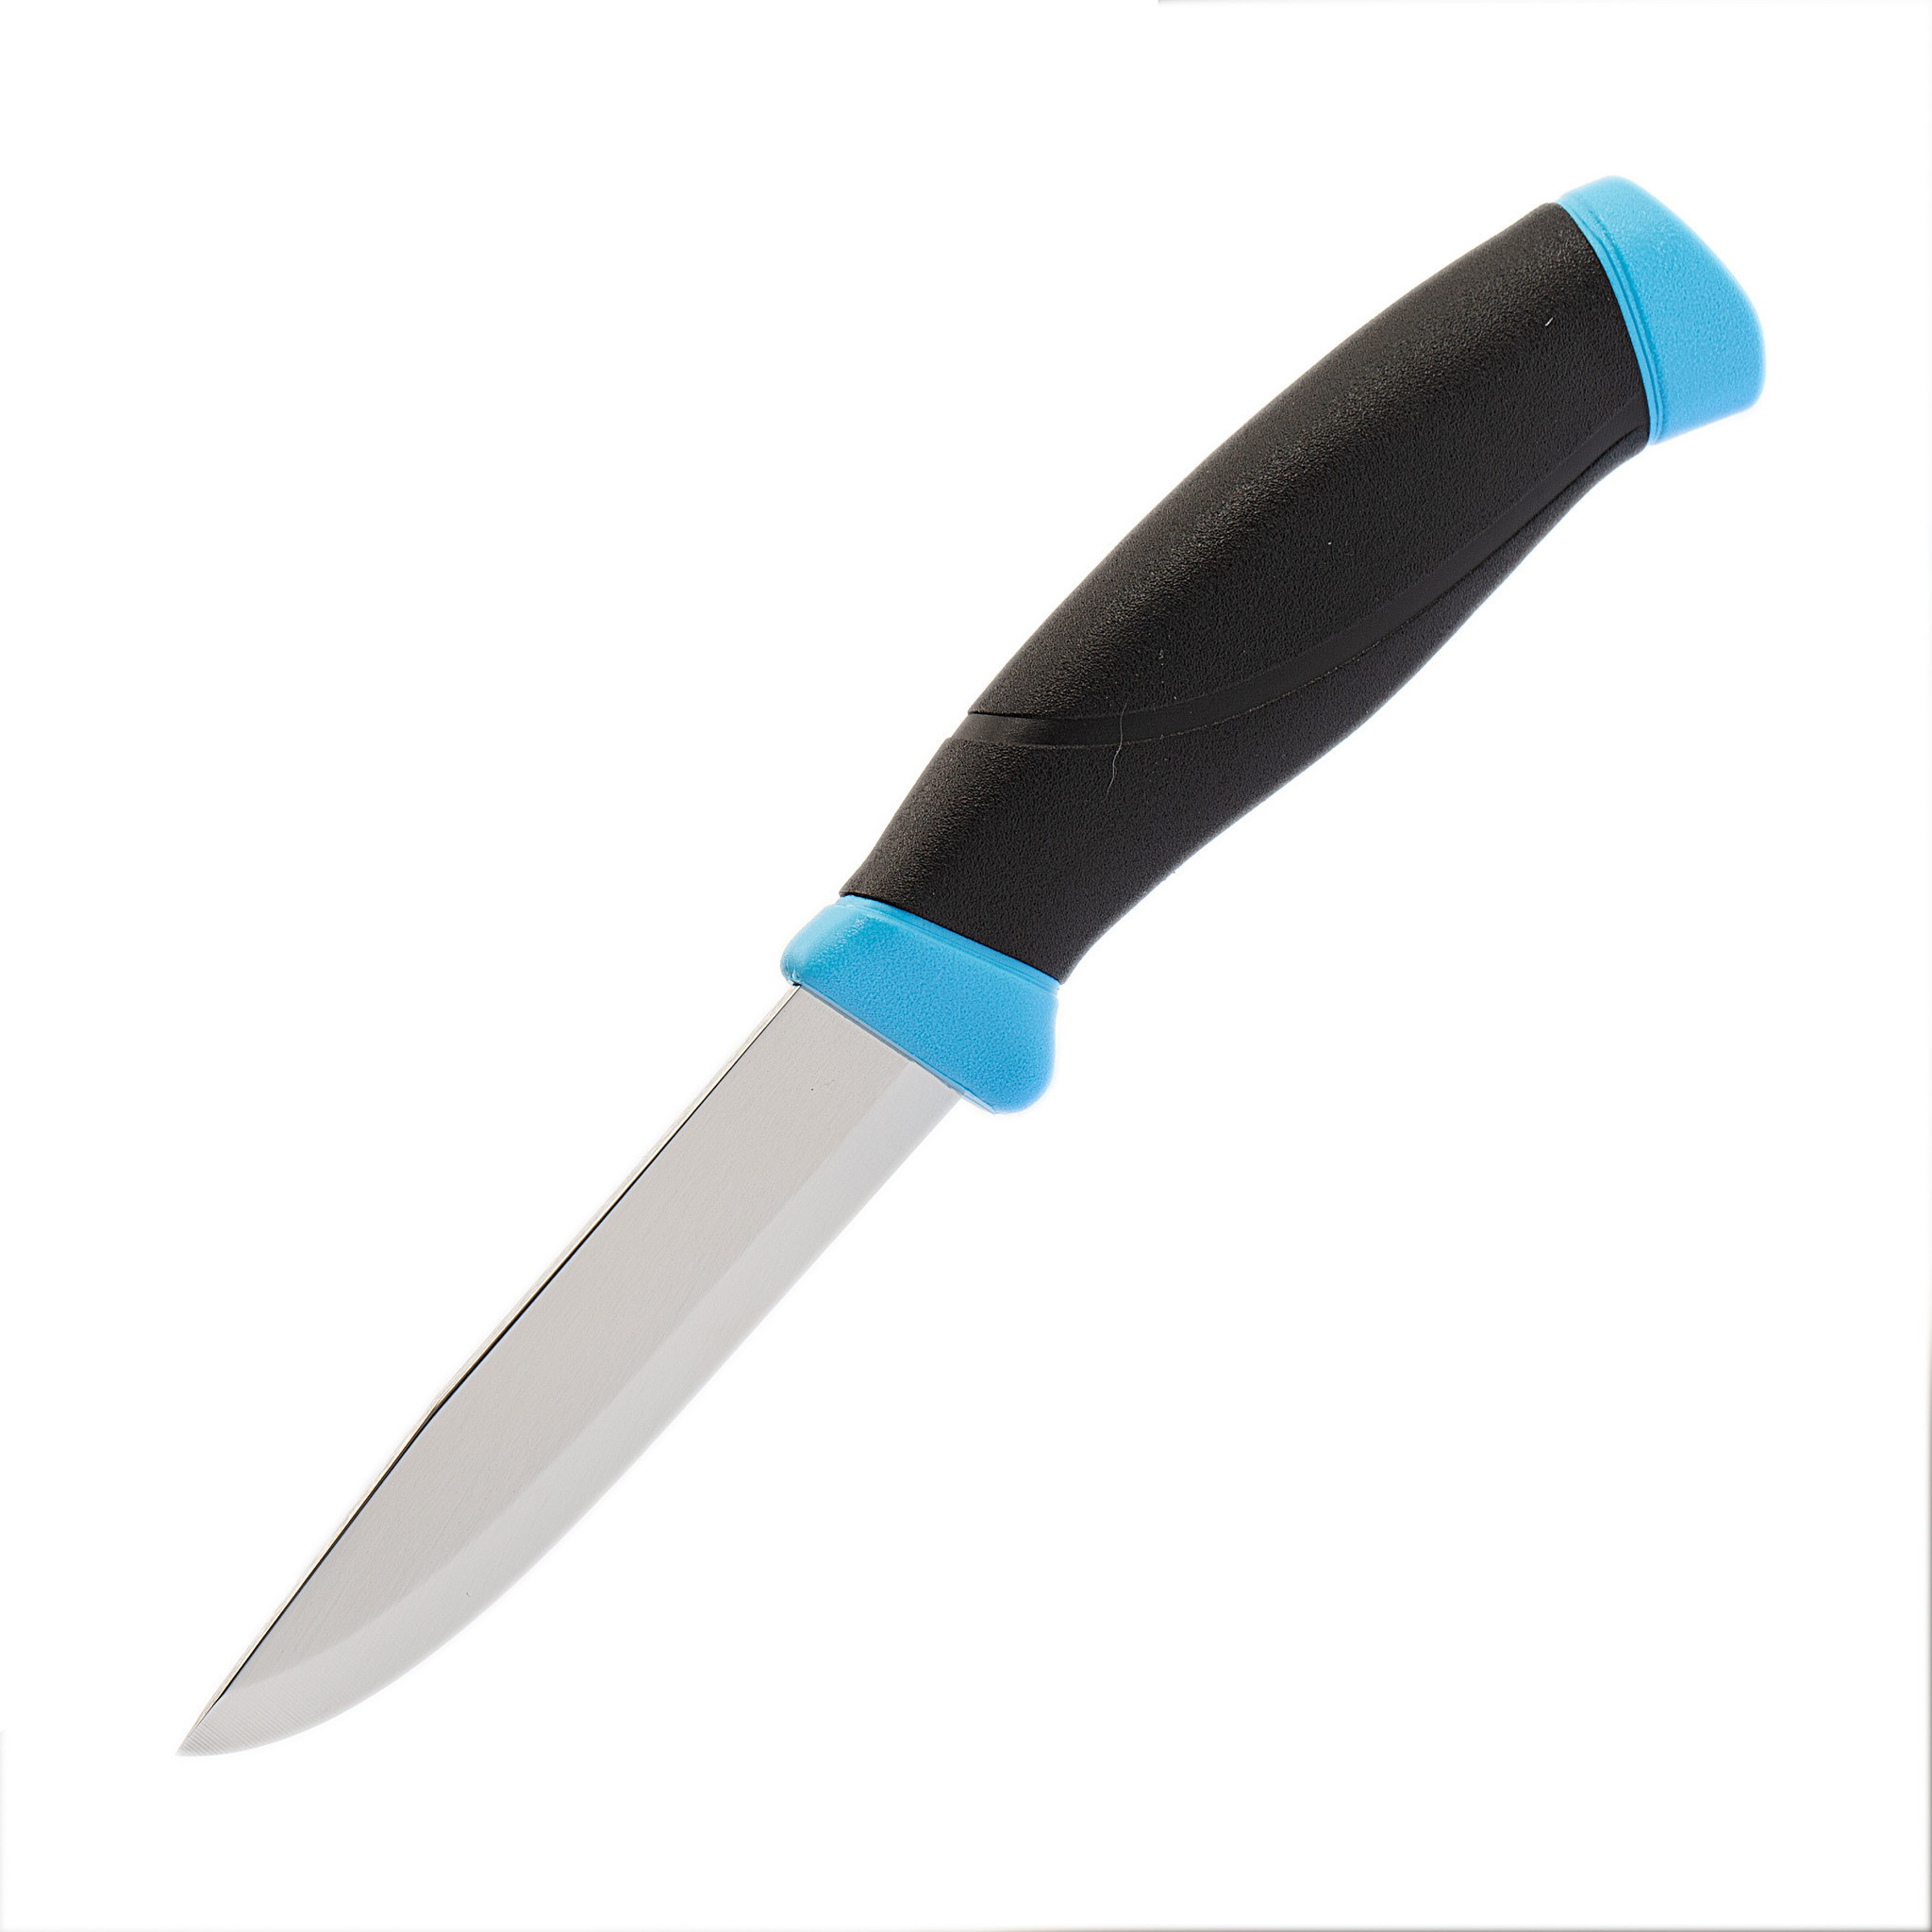 Нож с фиксированным лезвием Morakniv Companion Blue, сталь Sandvik 12С27, рукоять пластик/резина, голубой